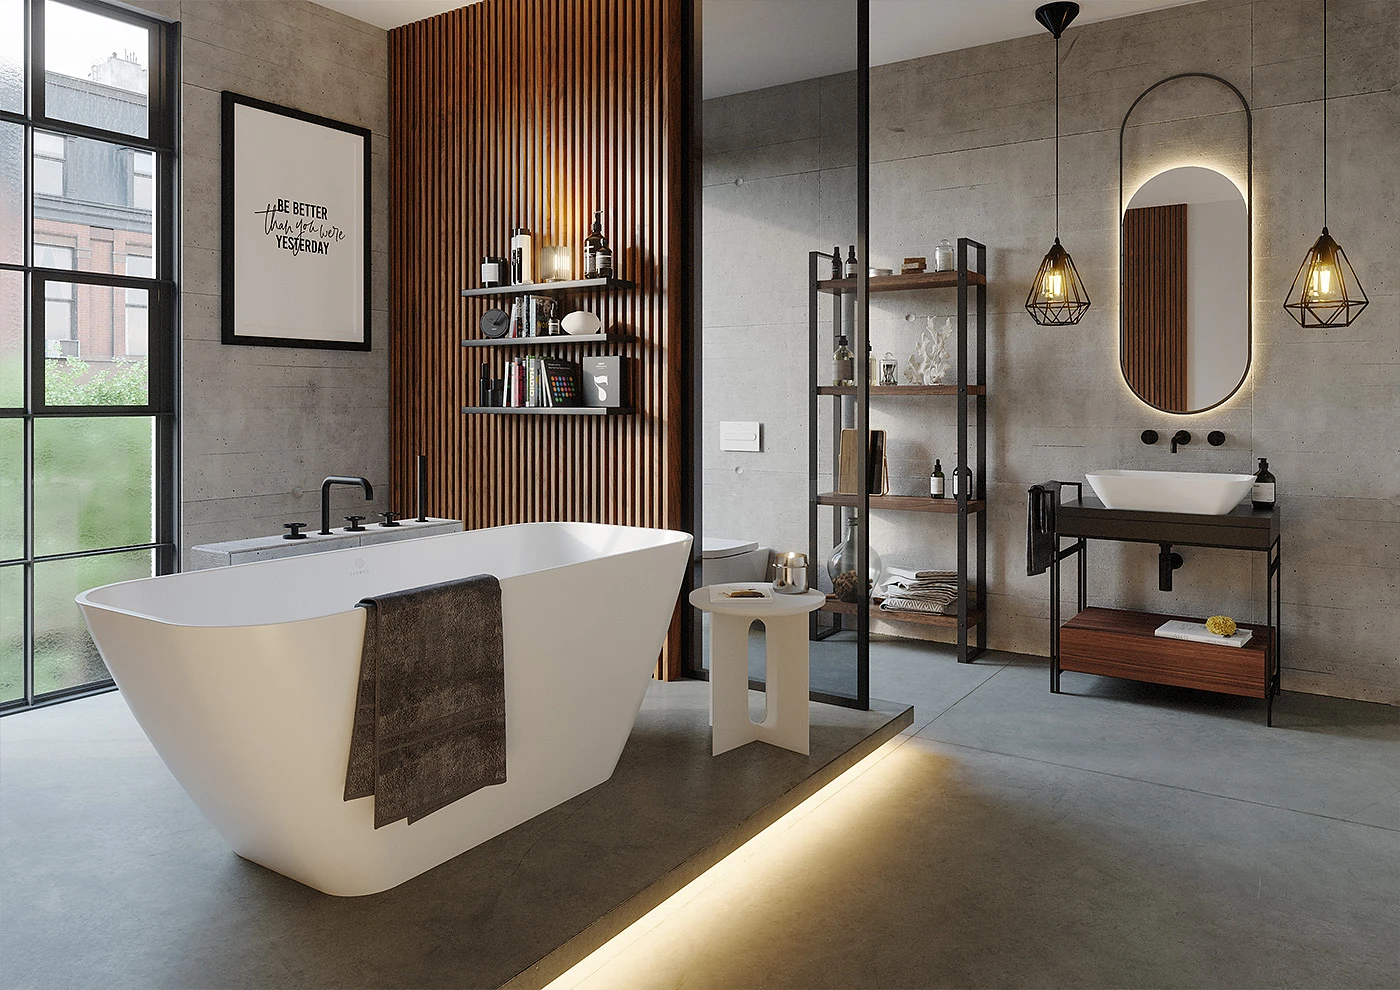  Łazienka w stylu loftowym z wykorzystaniem metalowych oraz drewnianych elementów oraz wielkoformatowych szarych płytek. 